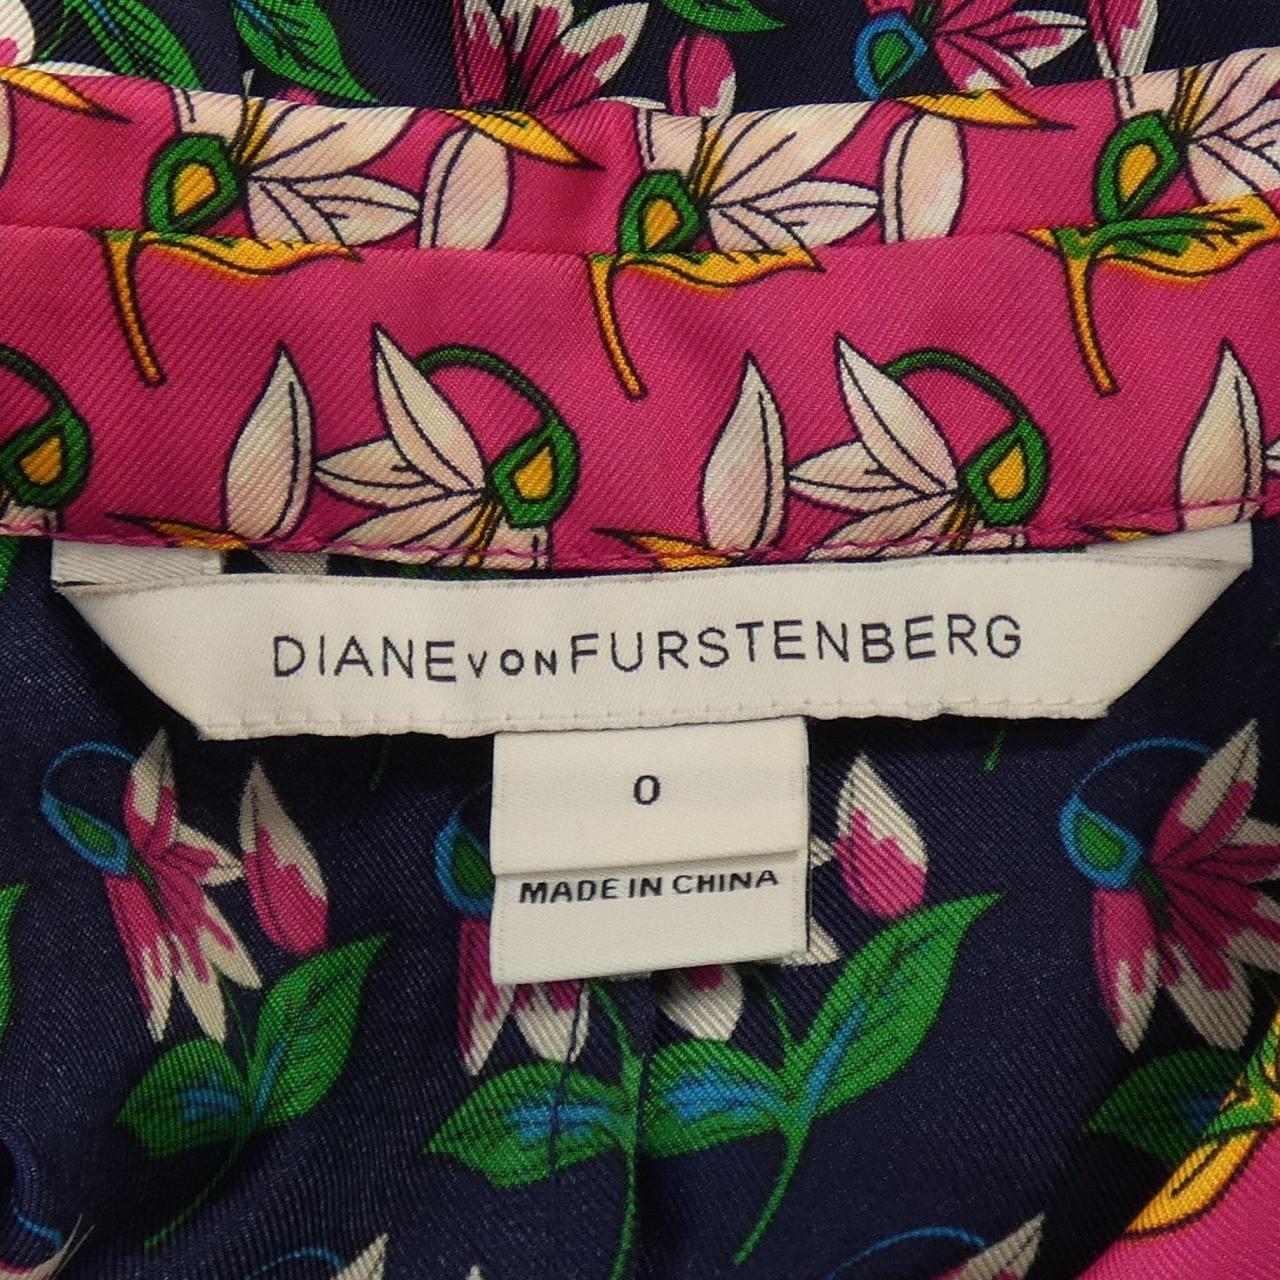 Diane von Furstenberg DIANE vonFURSTENBERG Dress